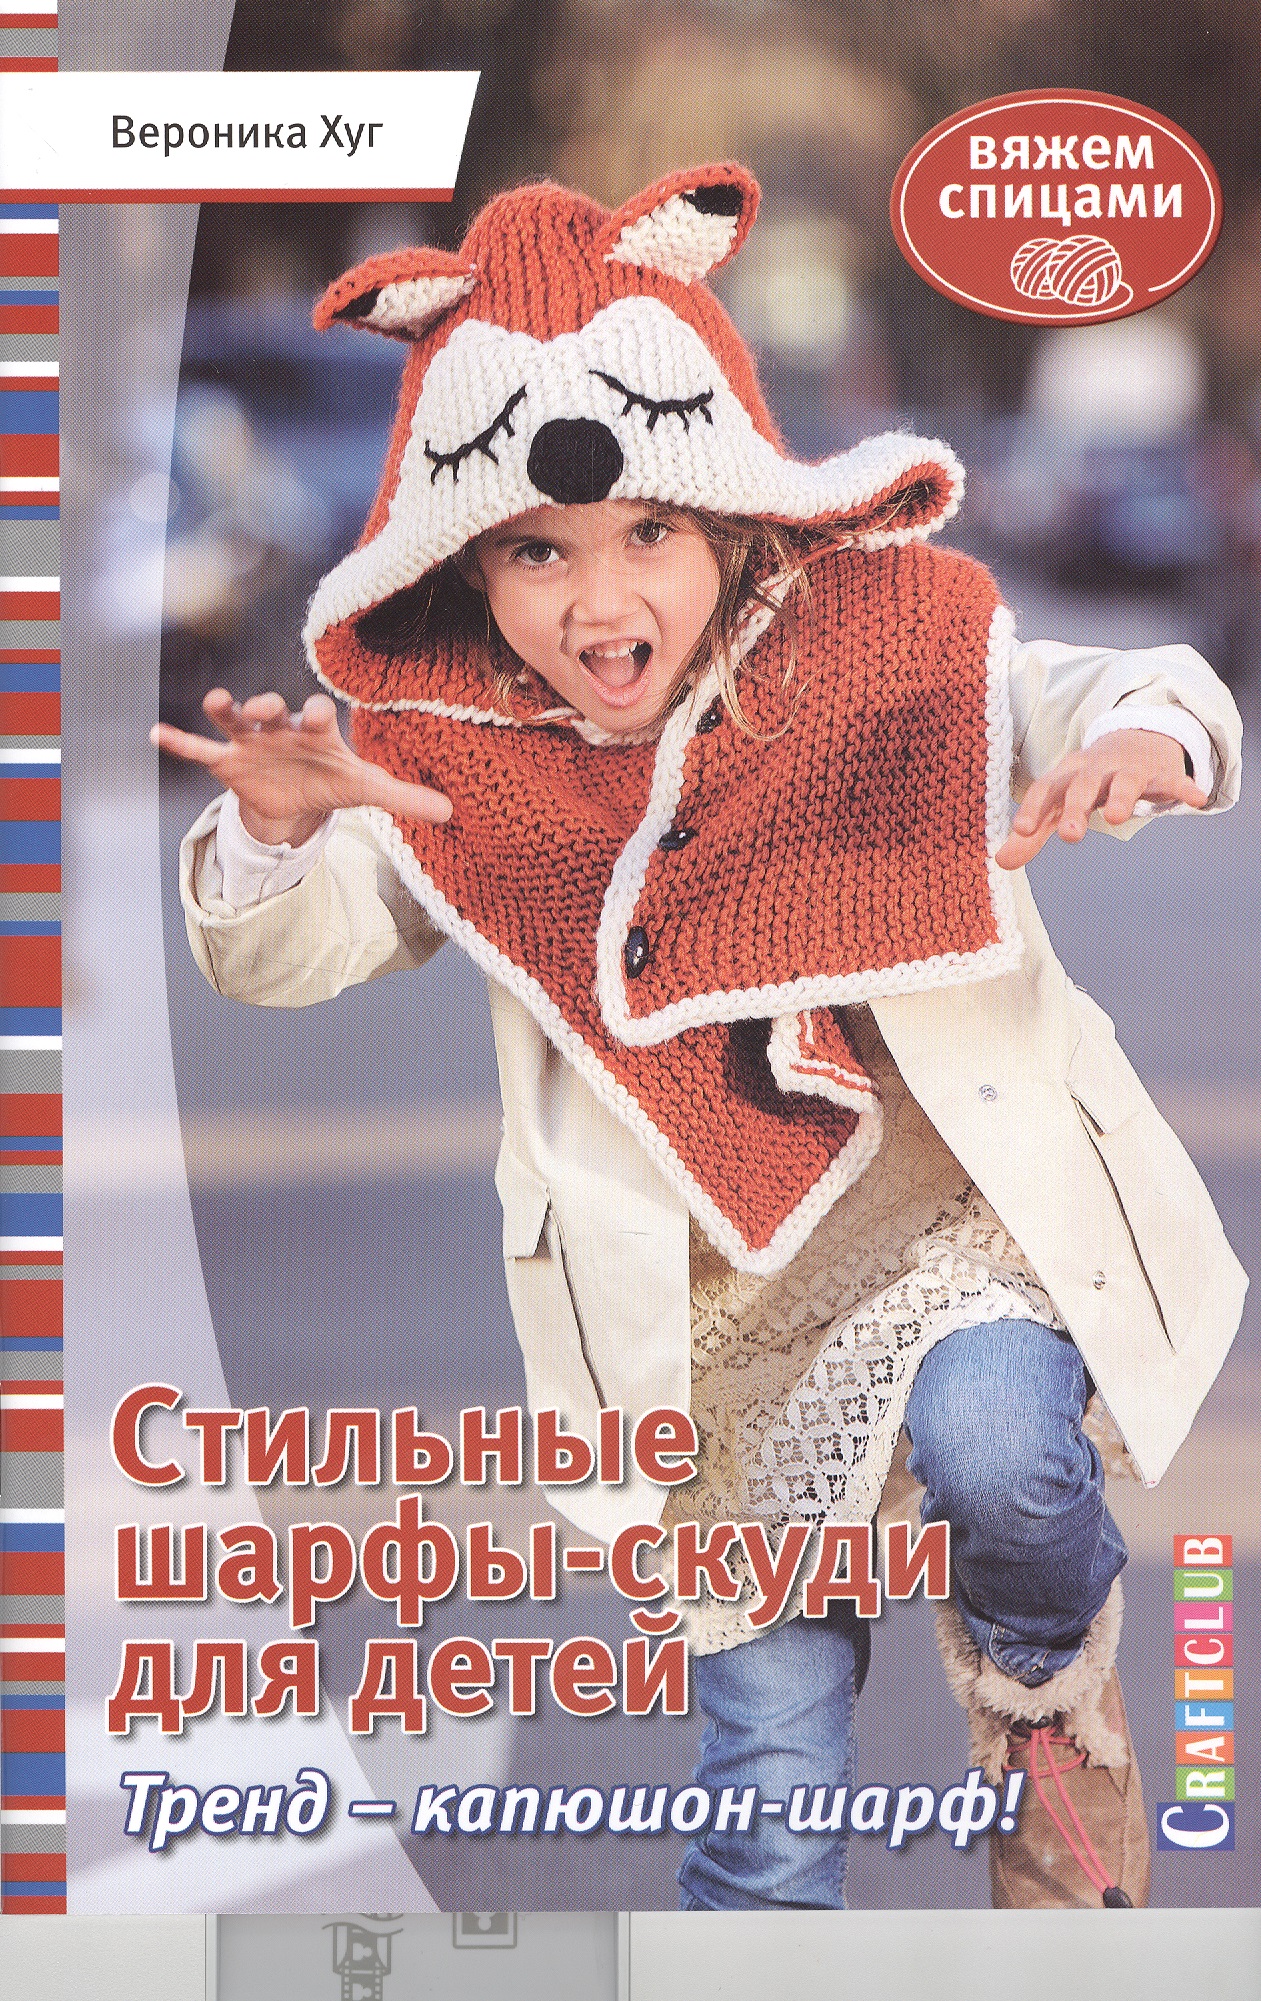 Хуг Вероника Стильные шарфы-скуди для детей. Вяжем спицами